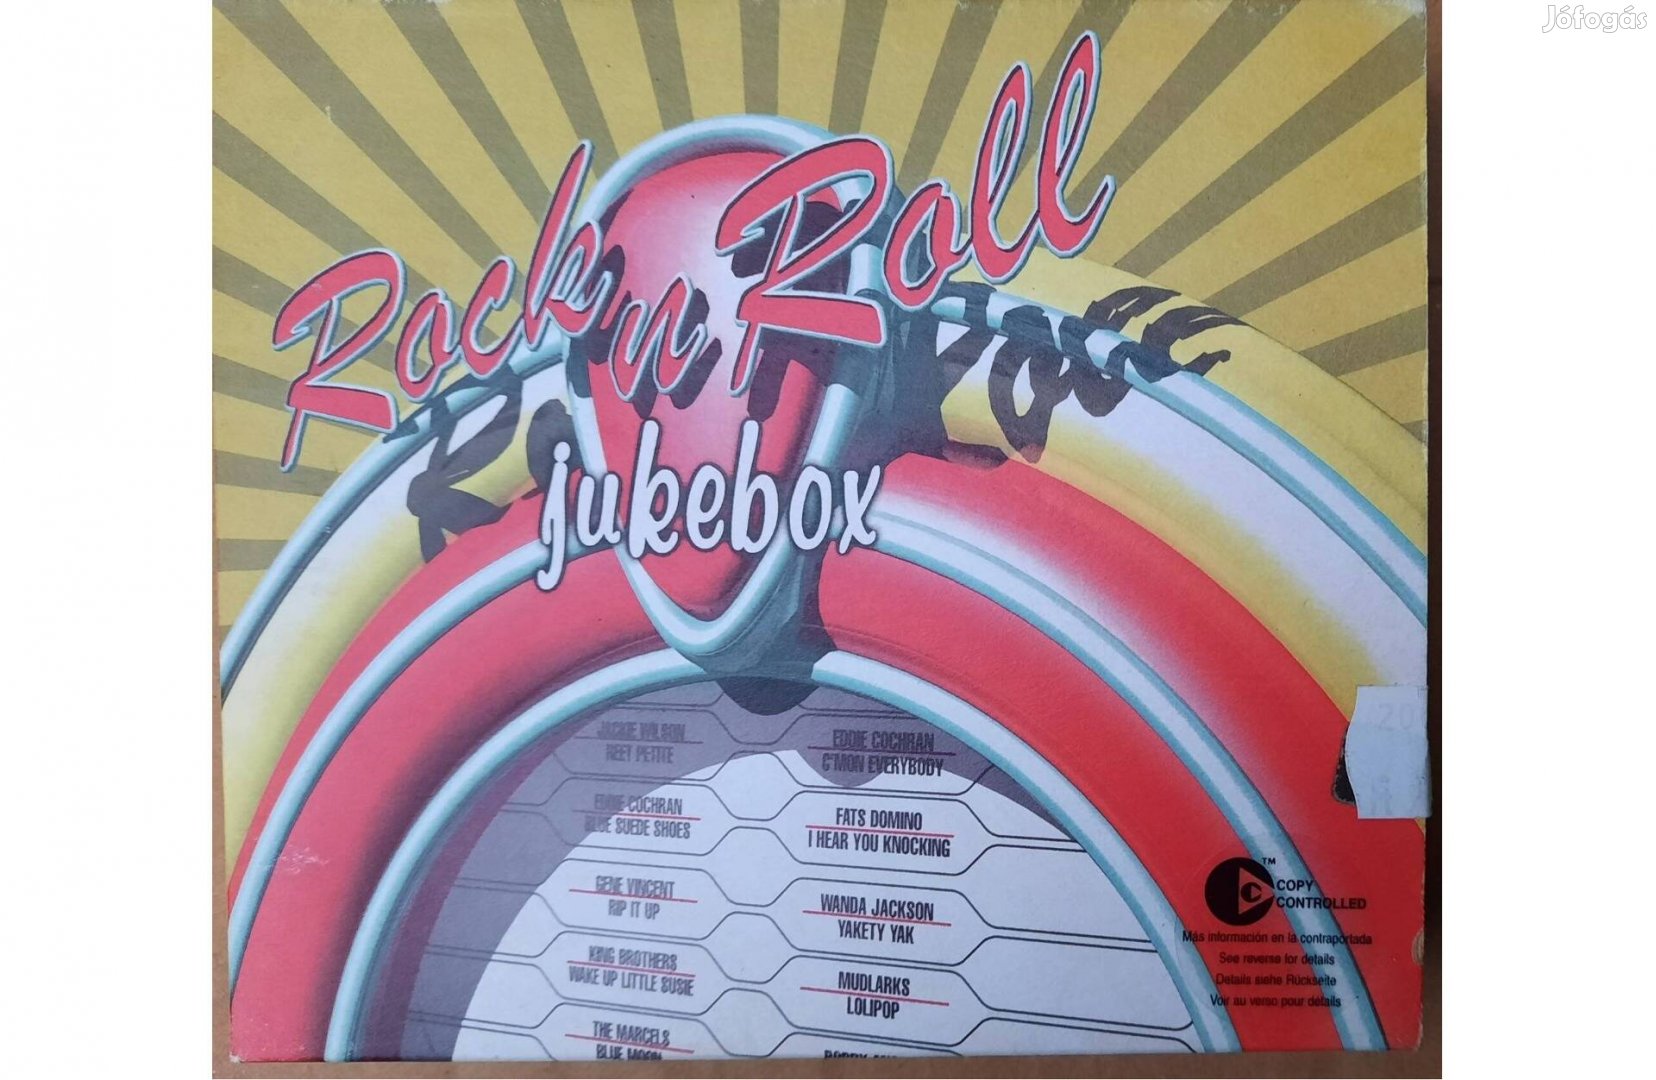 3 darabos Rock n Roll jukebox CD szett eladó